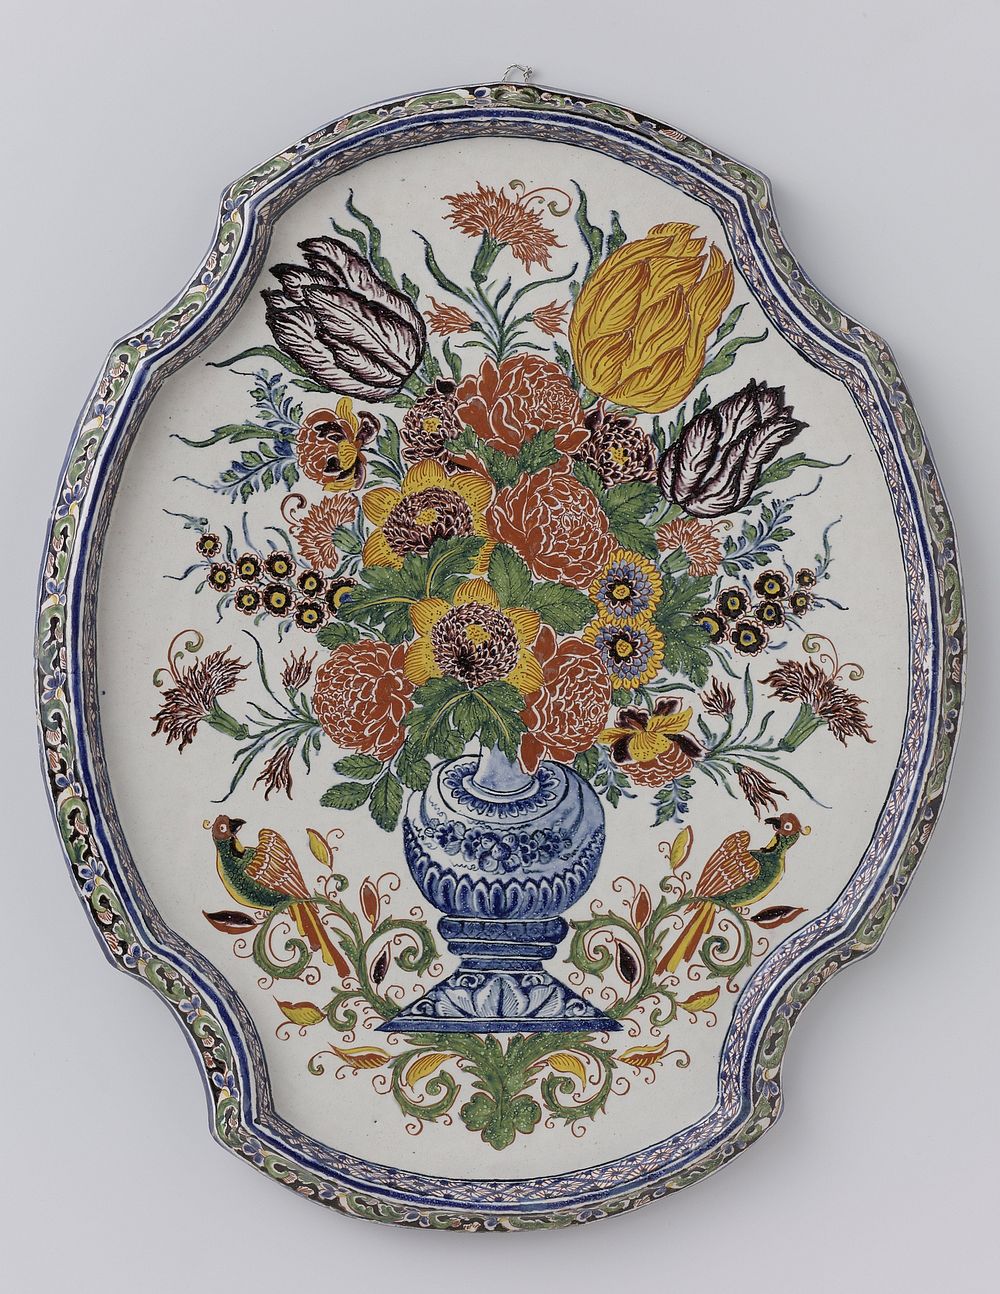 Ovale plaque met uitgeschulpte rand veelkleurig beschilderd met een vaas met bloemen (c. 1720 - c. 1760) by anonymous